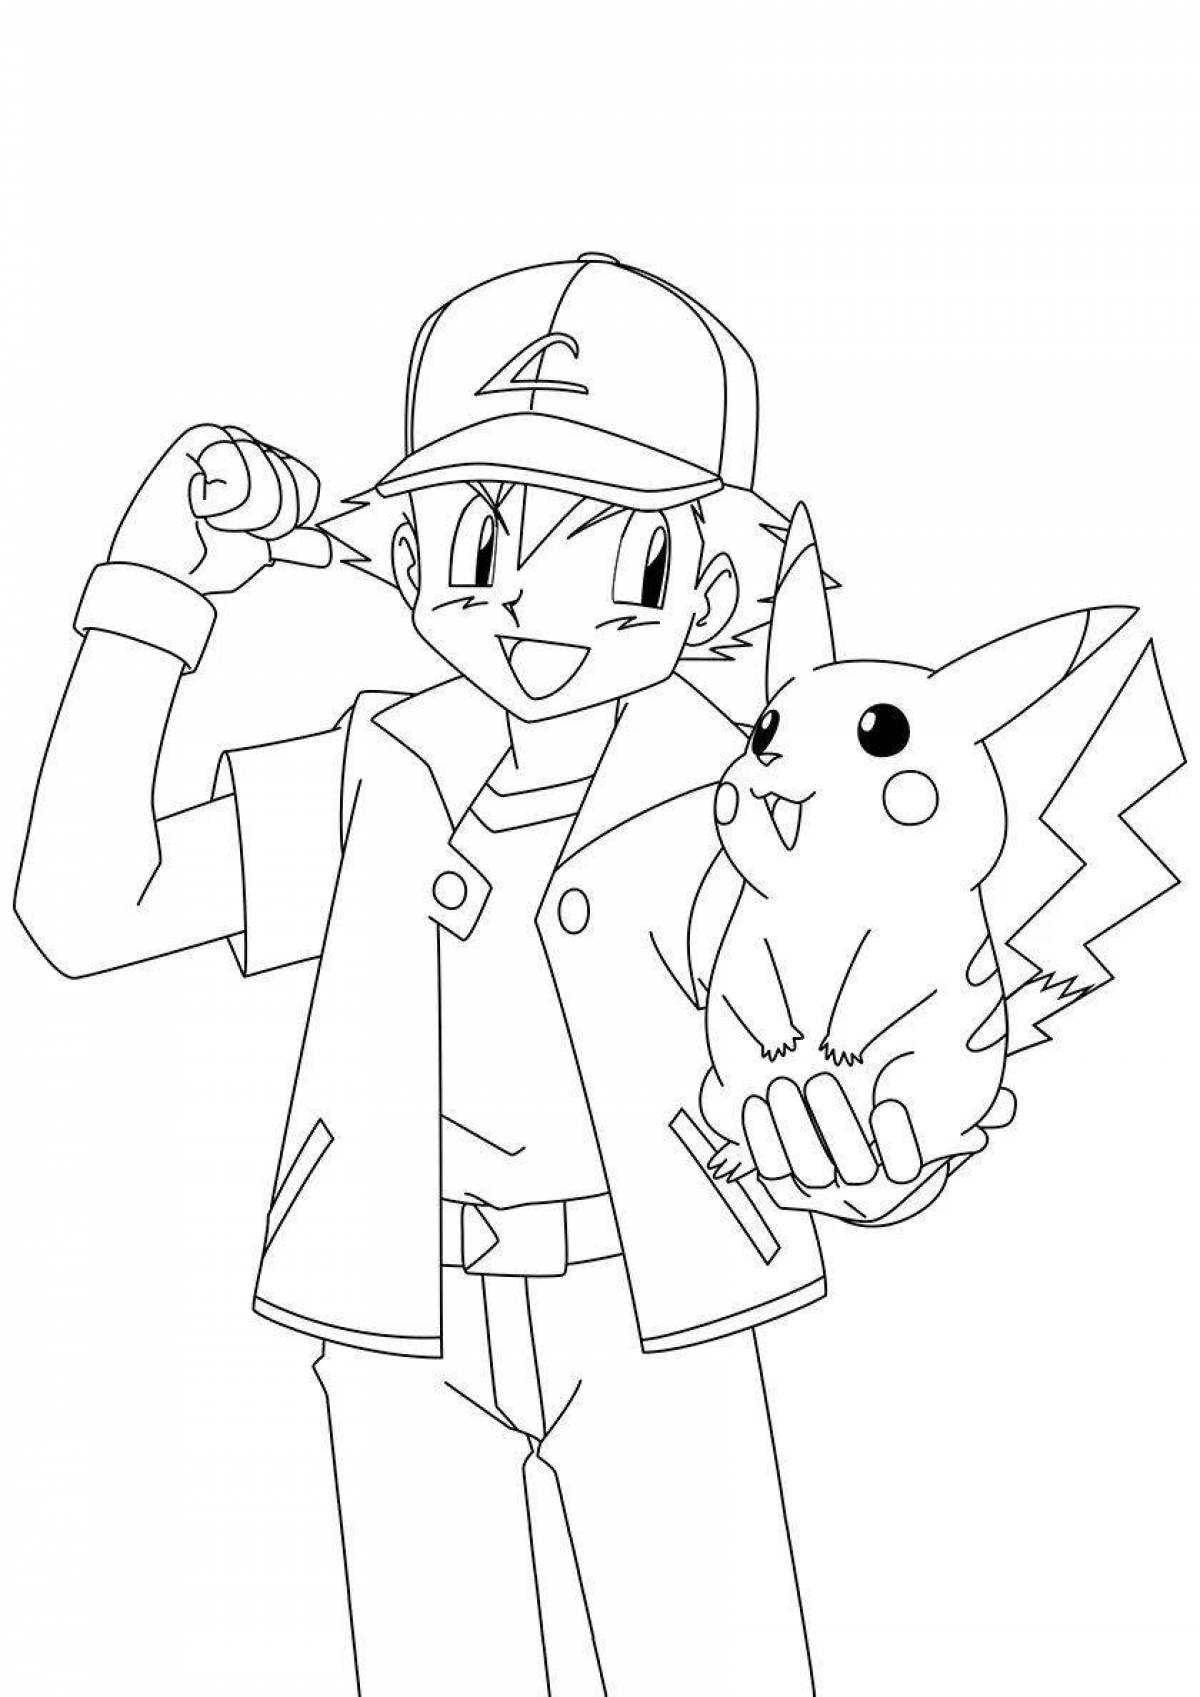 Fun coloring Pikachu in a cap